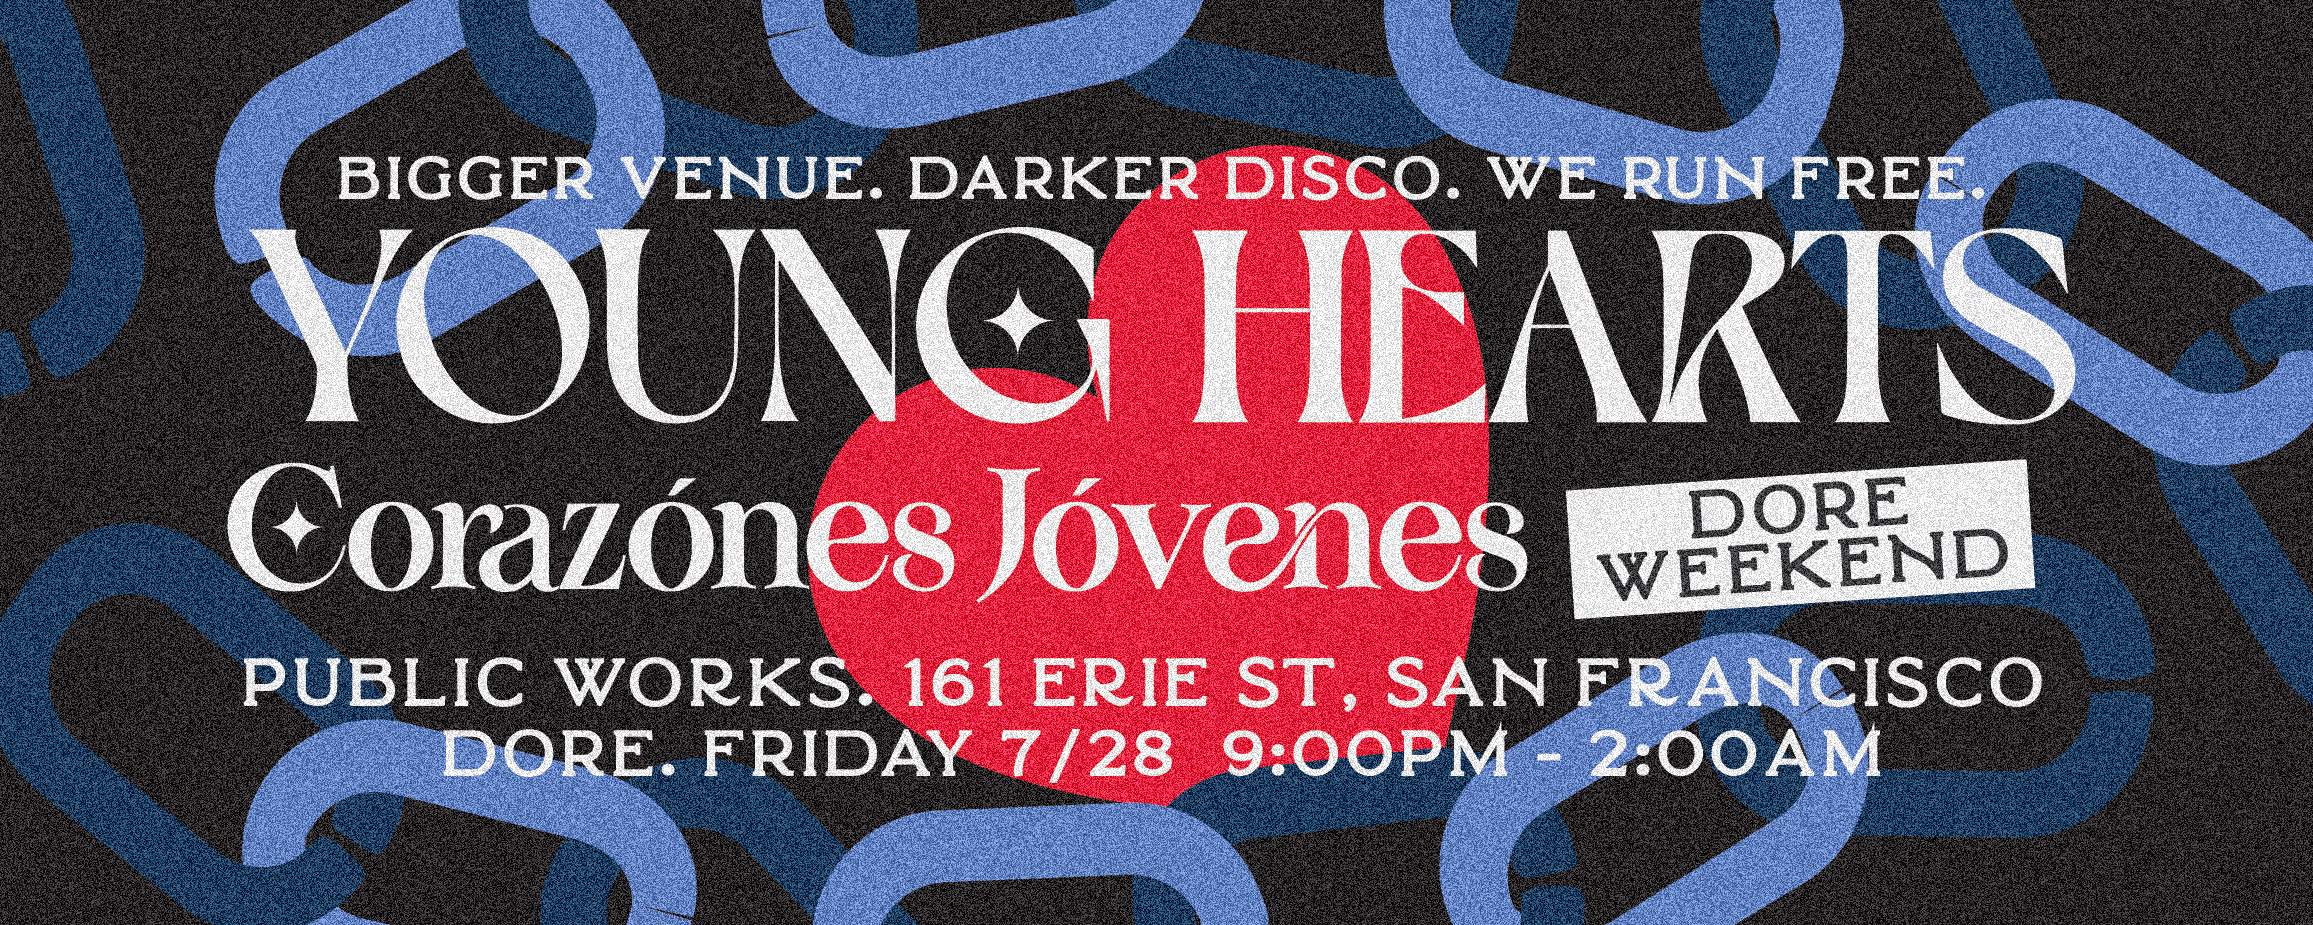 Young Hearts Dore Alley 7/28 - Página frontal